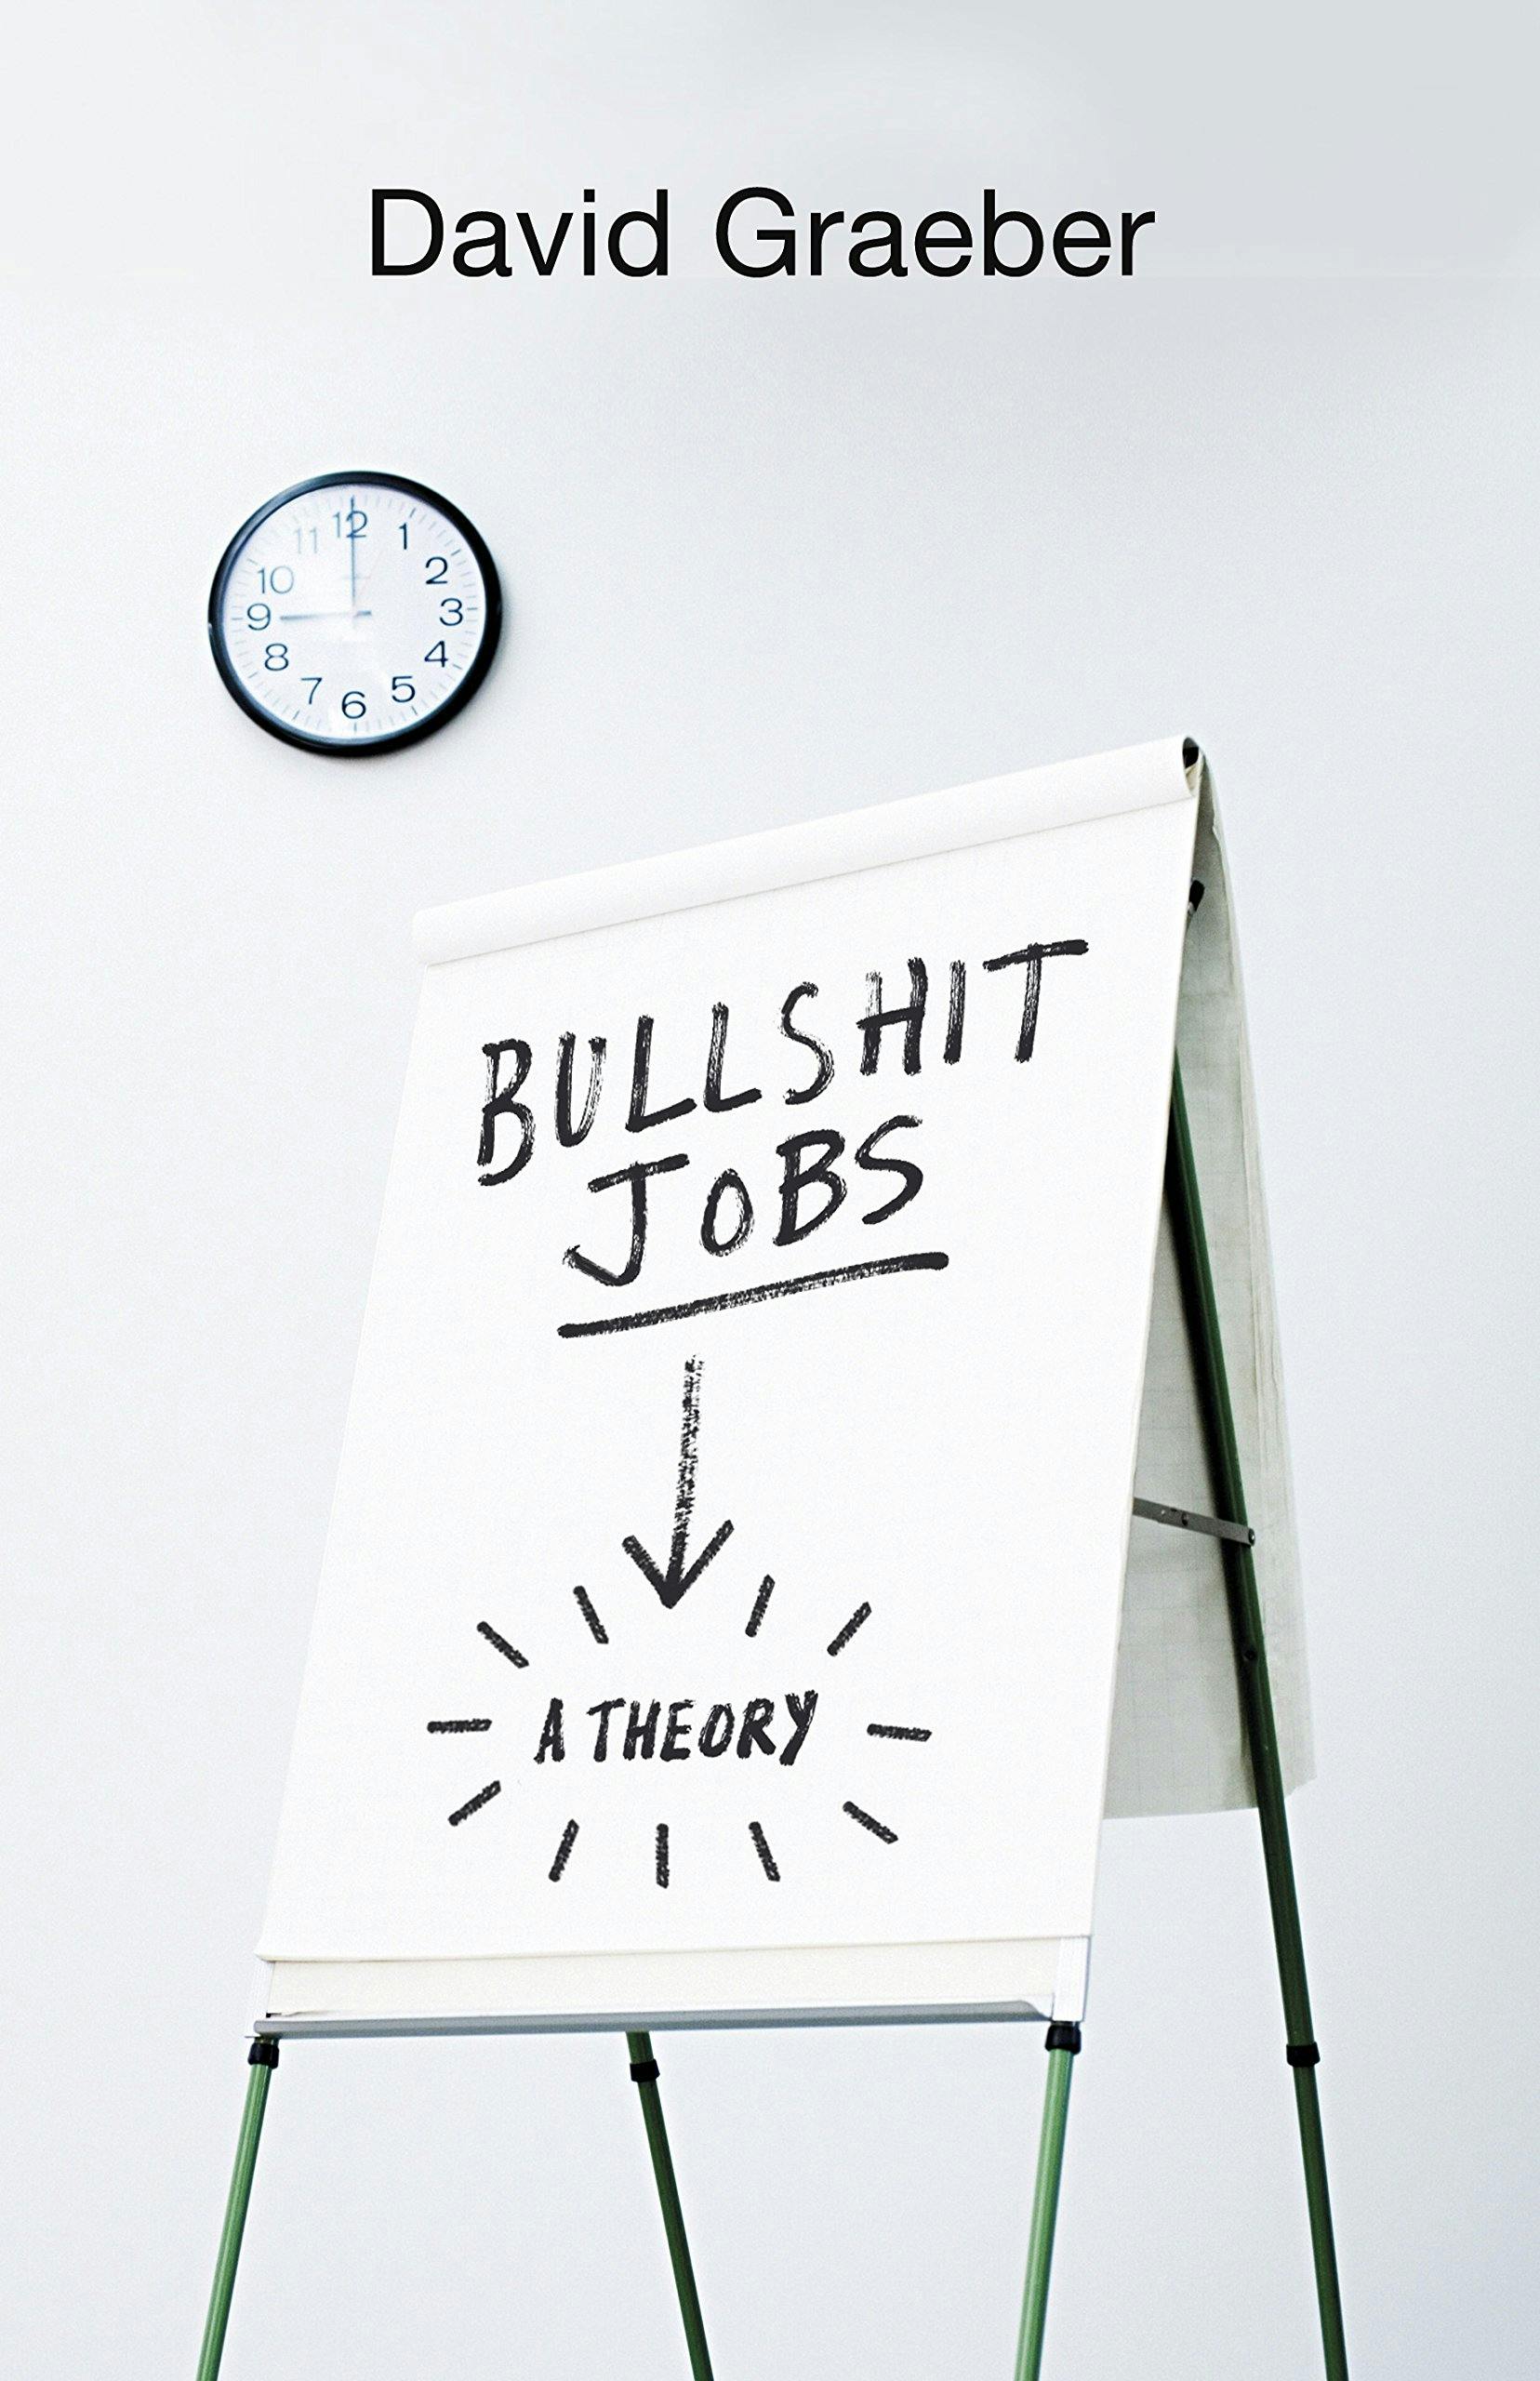 The media cover for “Bullshit Jobs” by David Graeber